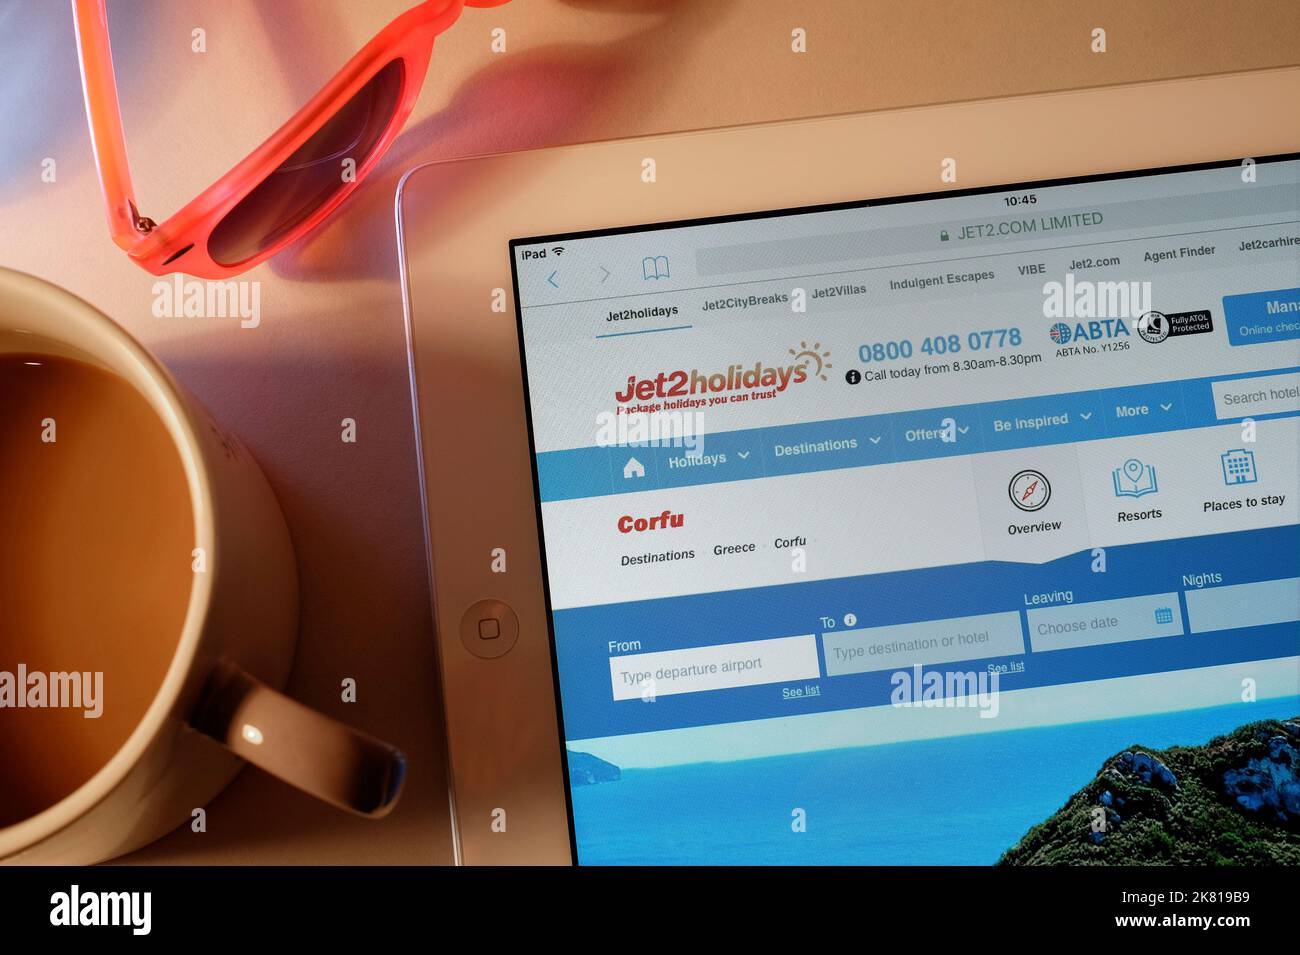 pagina iniziale del sito web delle festività jet2 sullo schermo del tablet Foto Stock